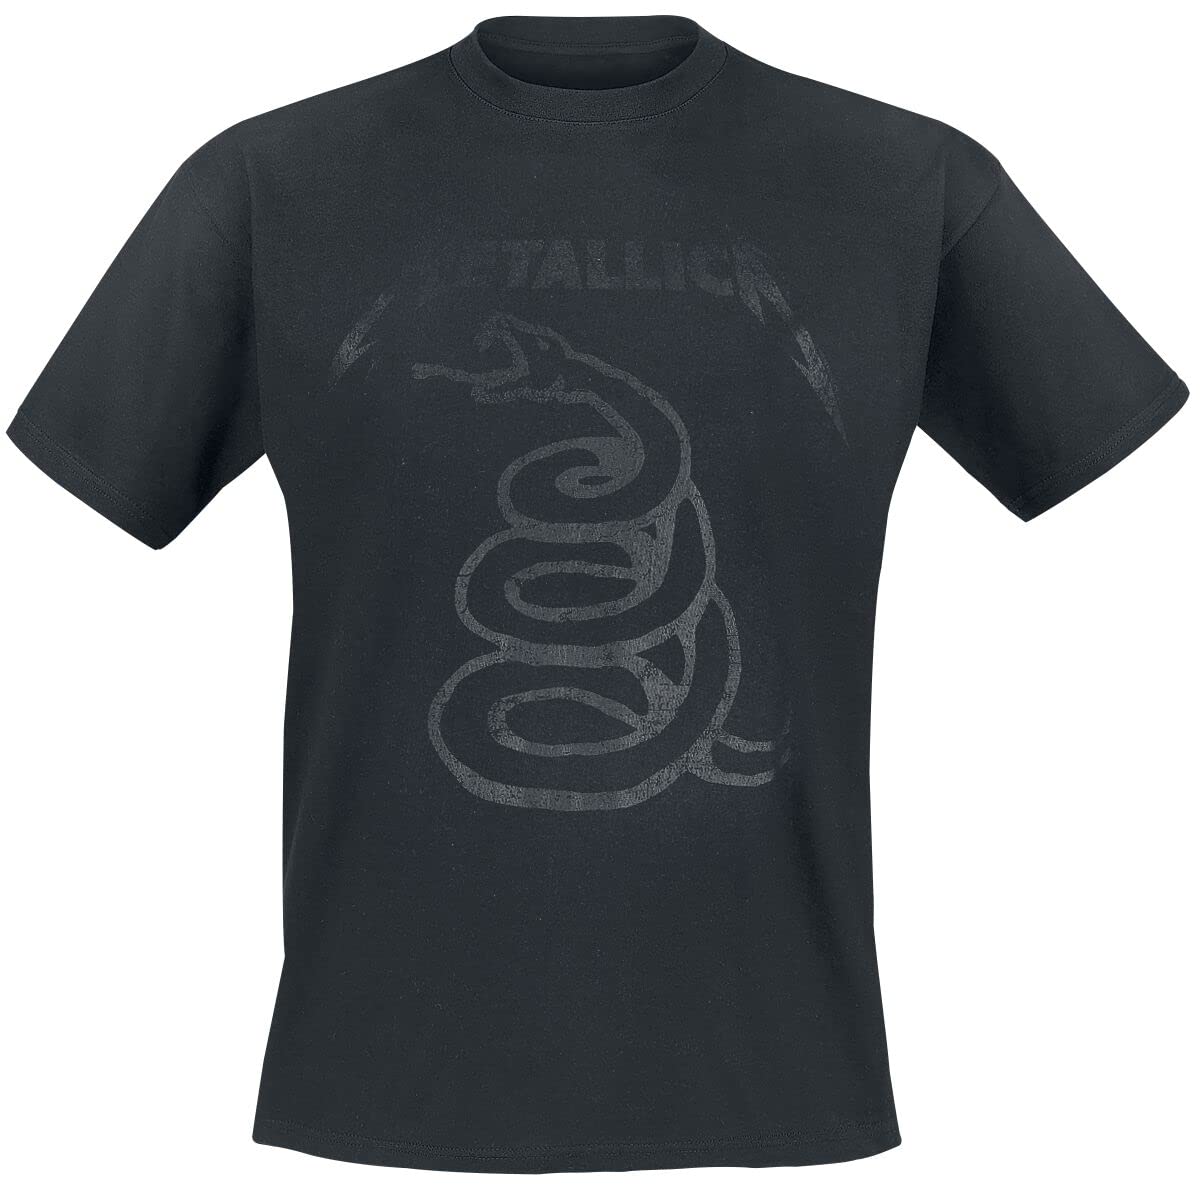 Metallica Black Snake Männer T-Shirt schwarz XXL 100% Baumwolle Band-Merch, Bands